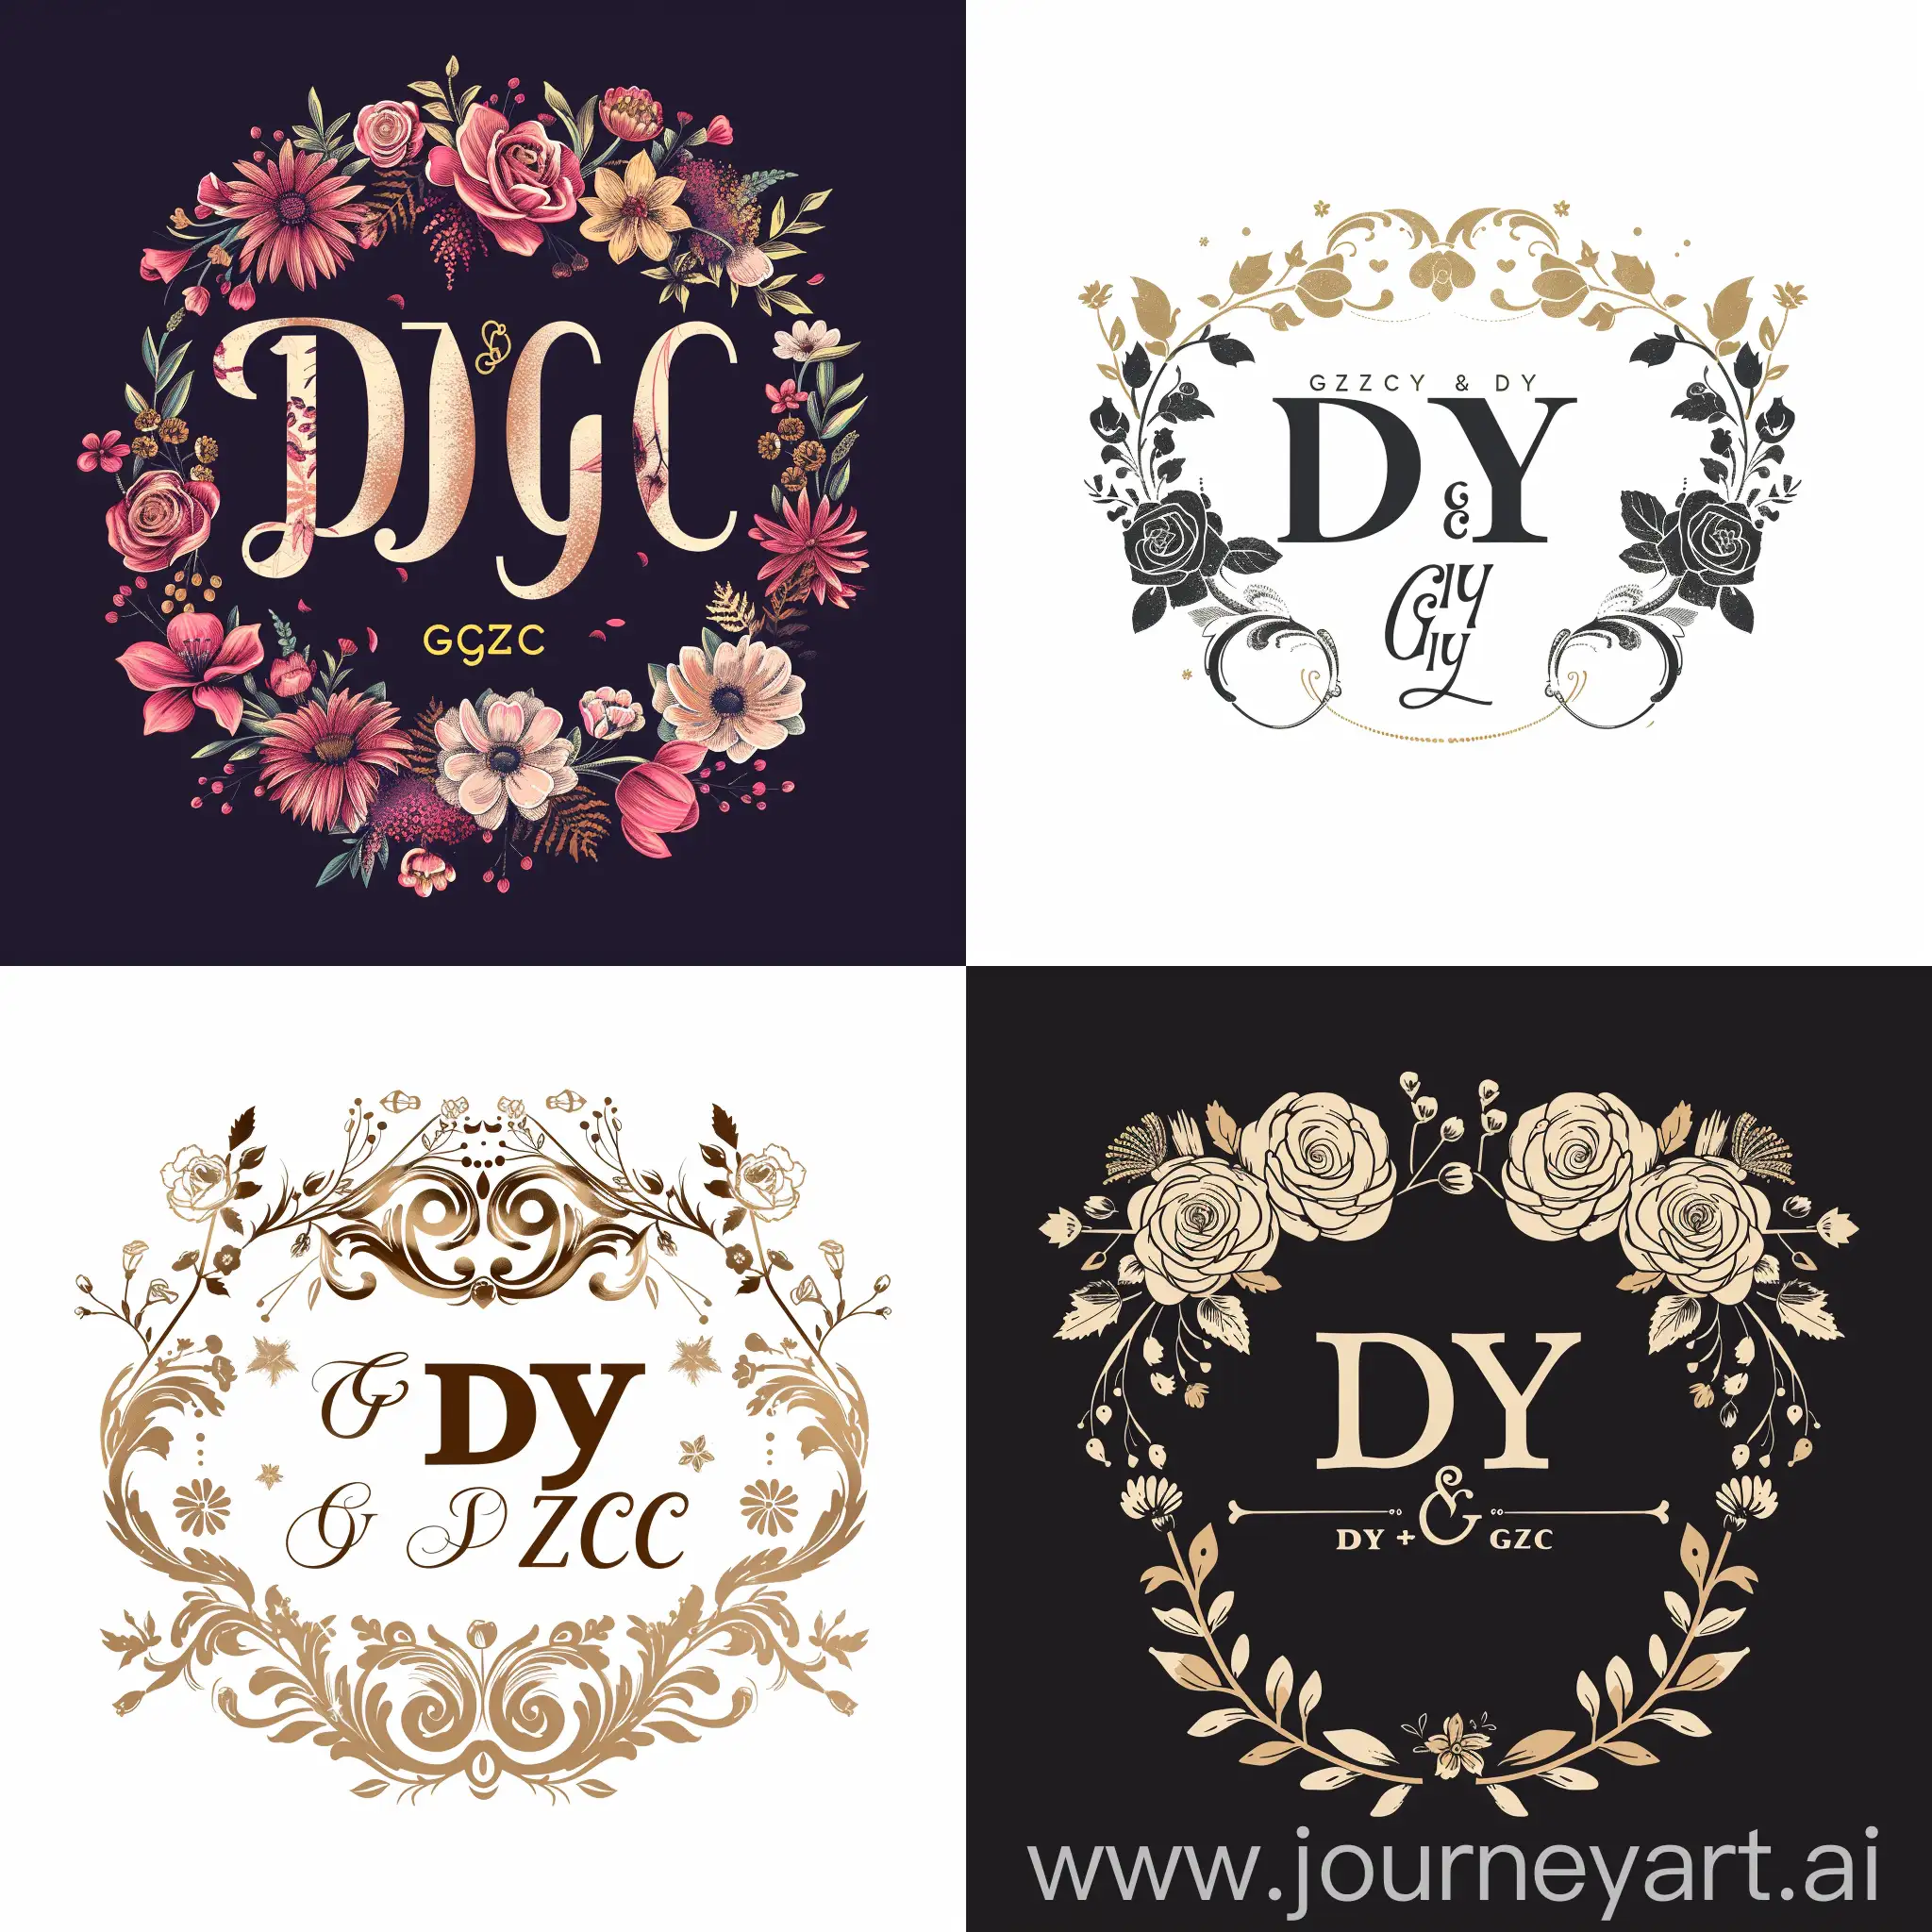 DY和GZC组成的婚礼logo，有浪漫的元素